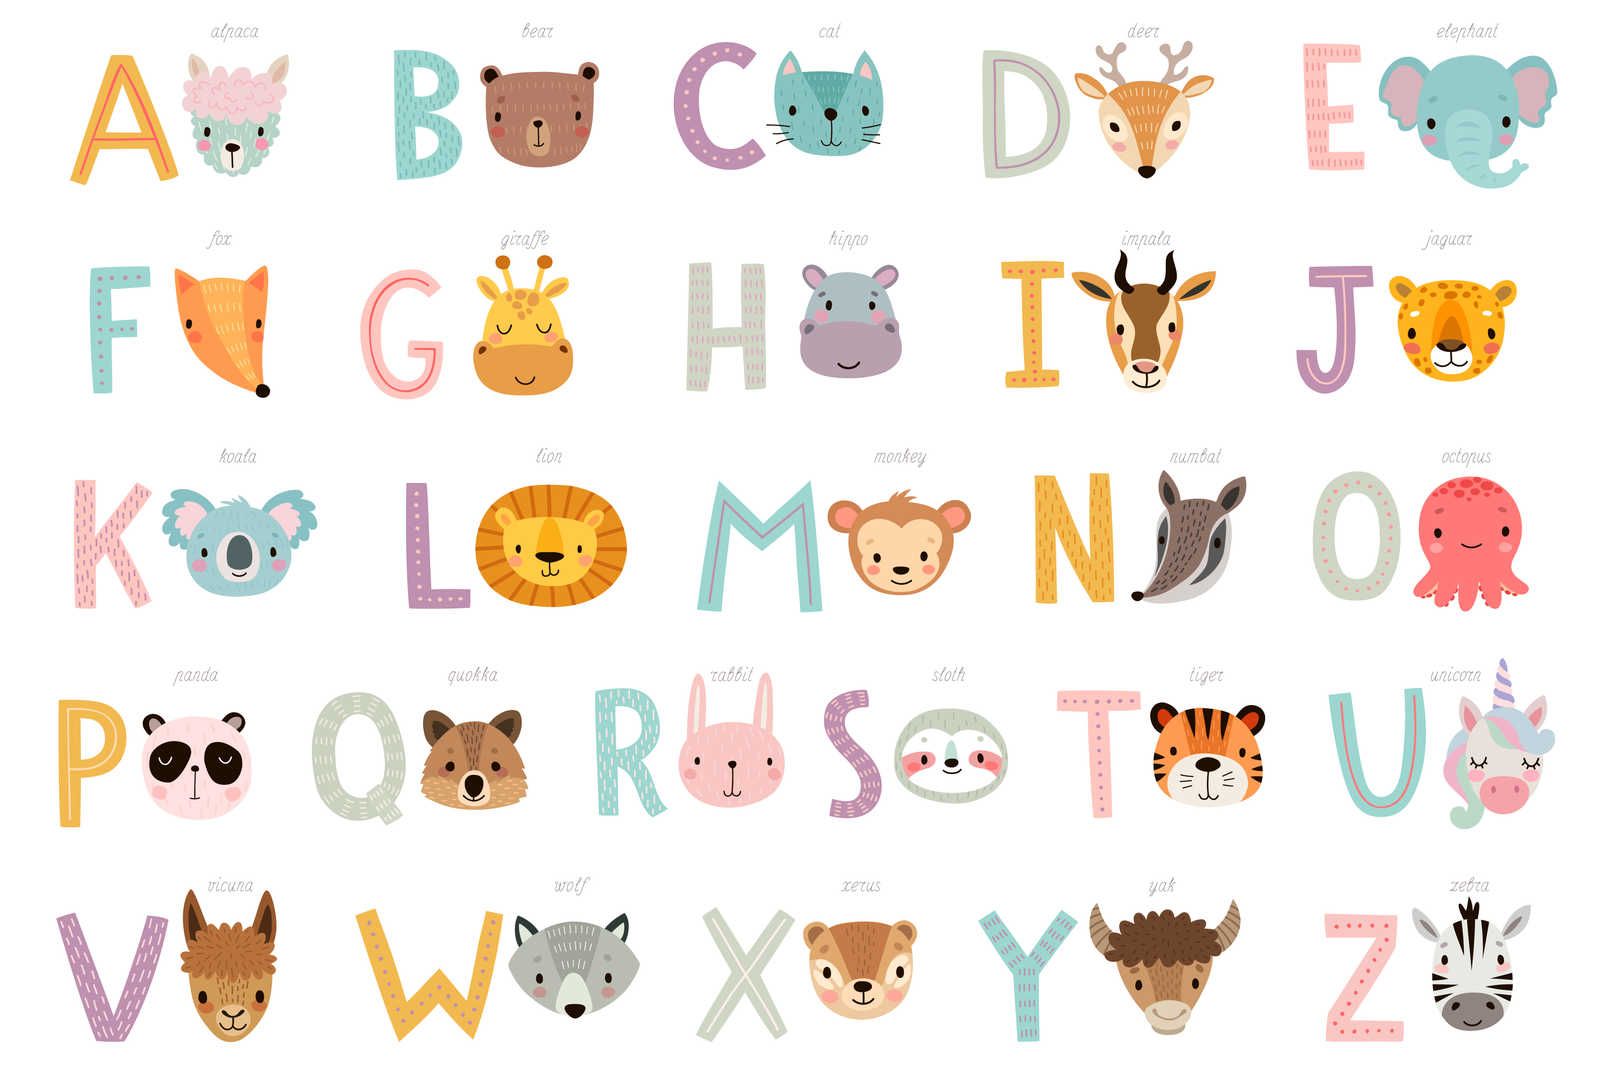             Leinwand ABC mit Tieren und Tiernamen – 90 cm x 60 cm
        